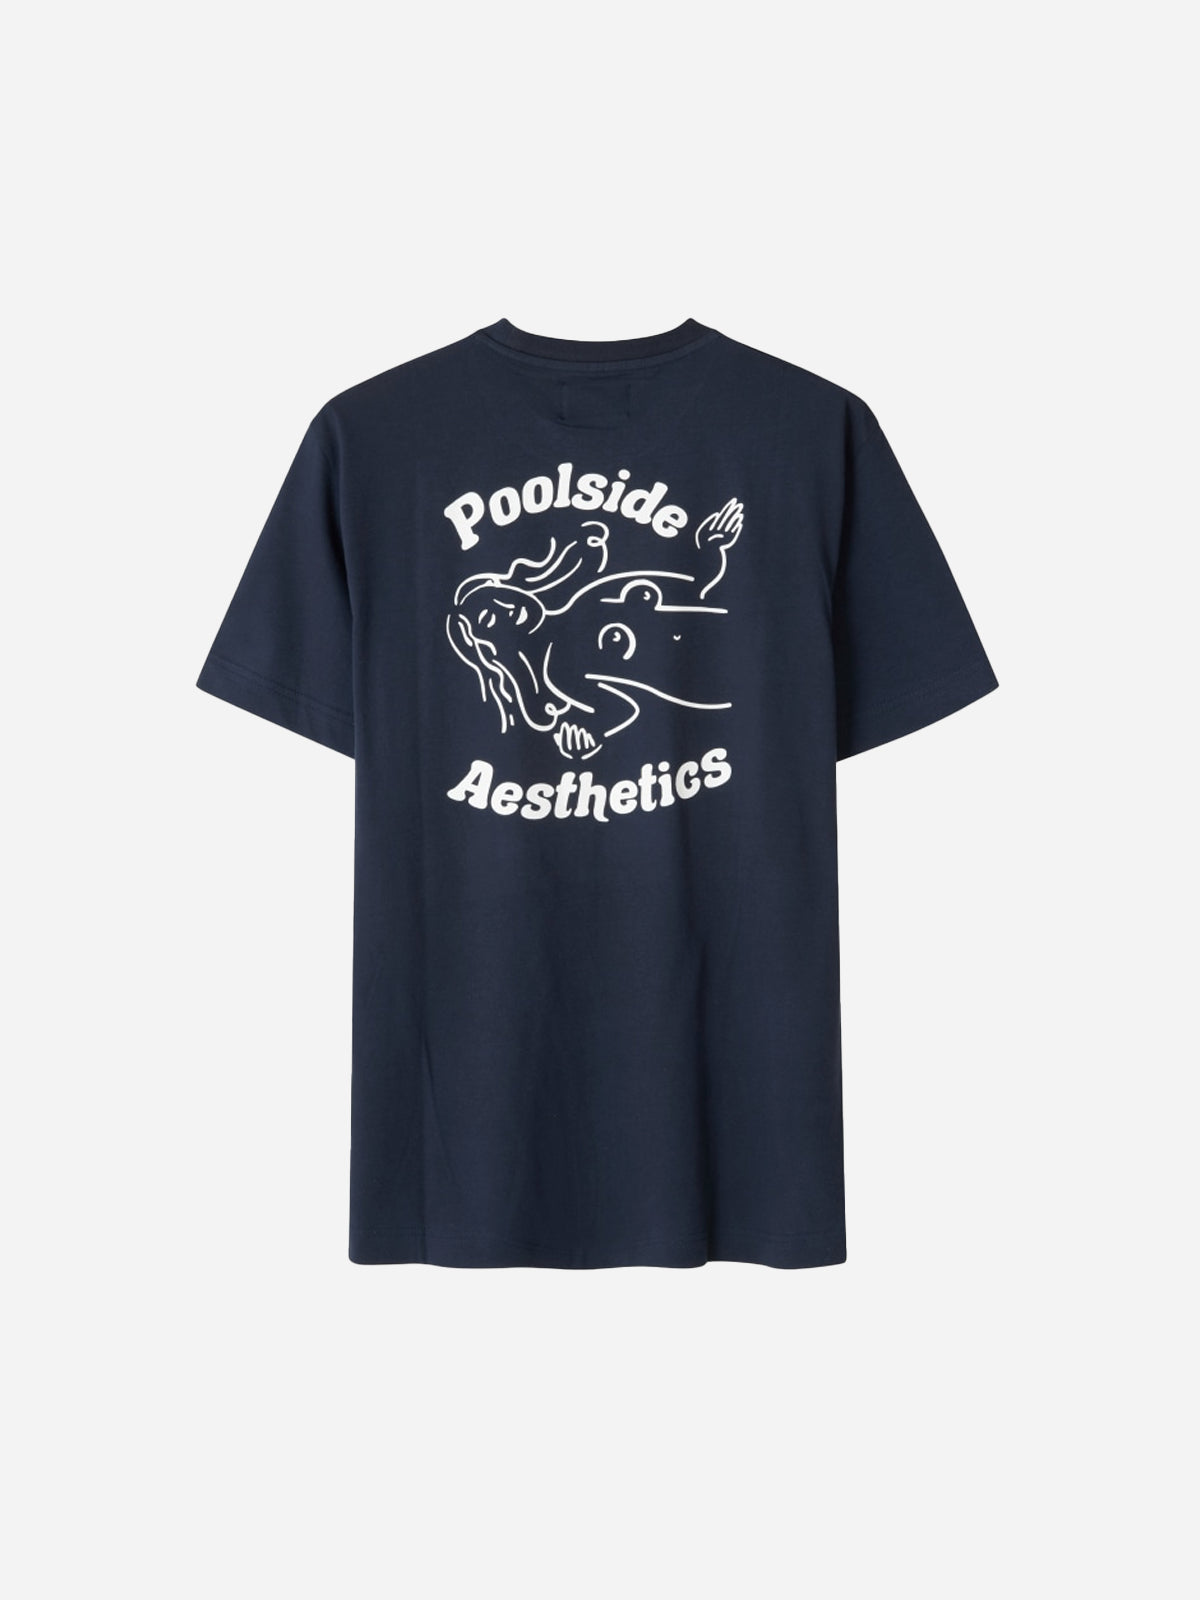 BEAT POOLSIDE / NAVY T-shirt - Libertine-Libertine - Kul og Koks